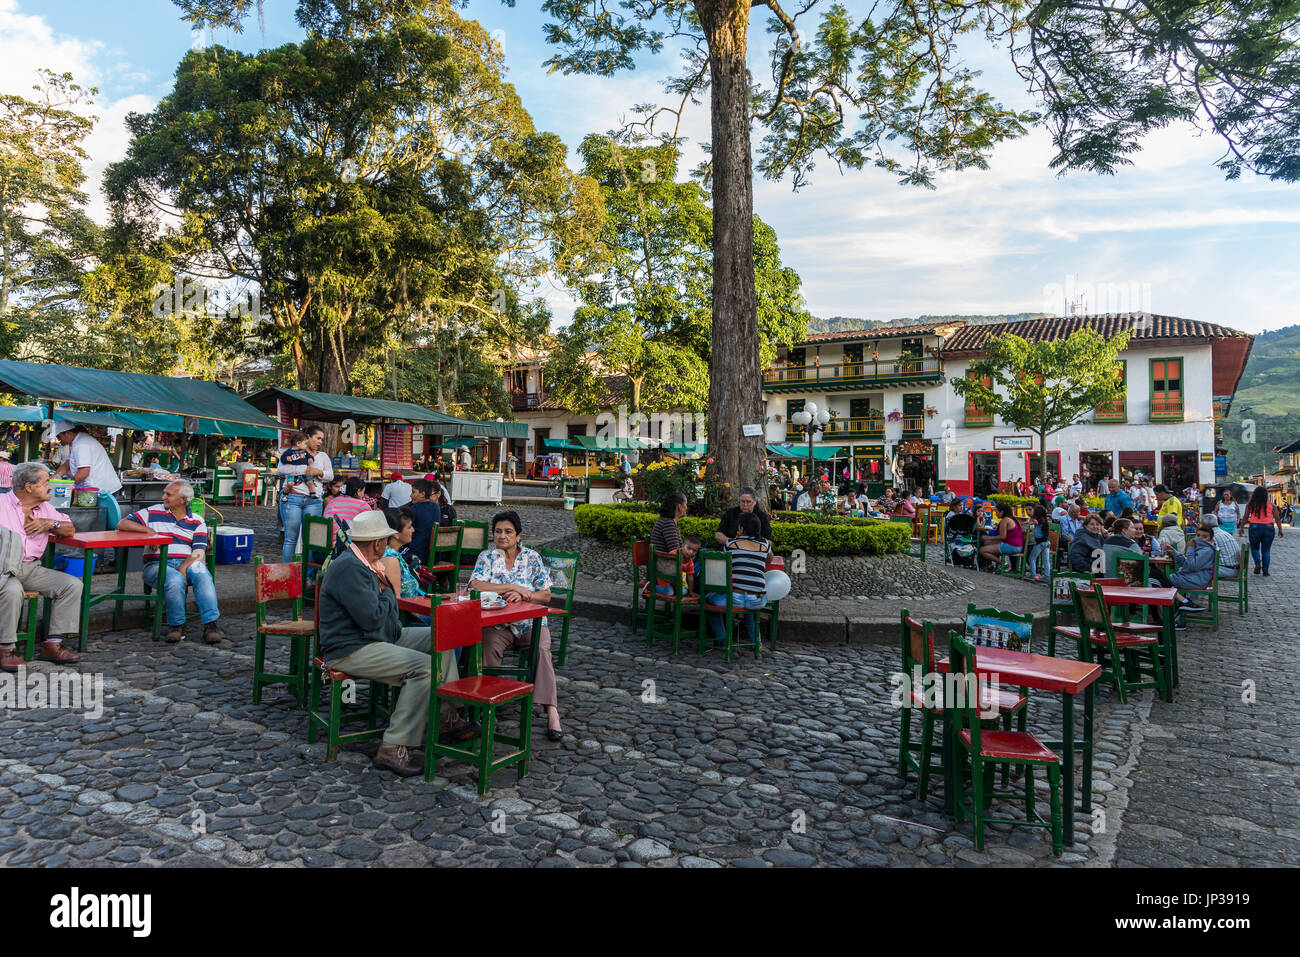 Les habitants et les visiteurs profiter de la journée dans le centre-ville historique de Jardin, la Colombie, l'Amérique du Sud. Banque D'Images